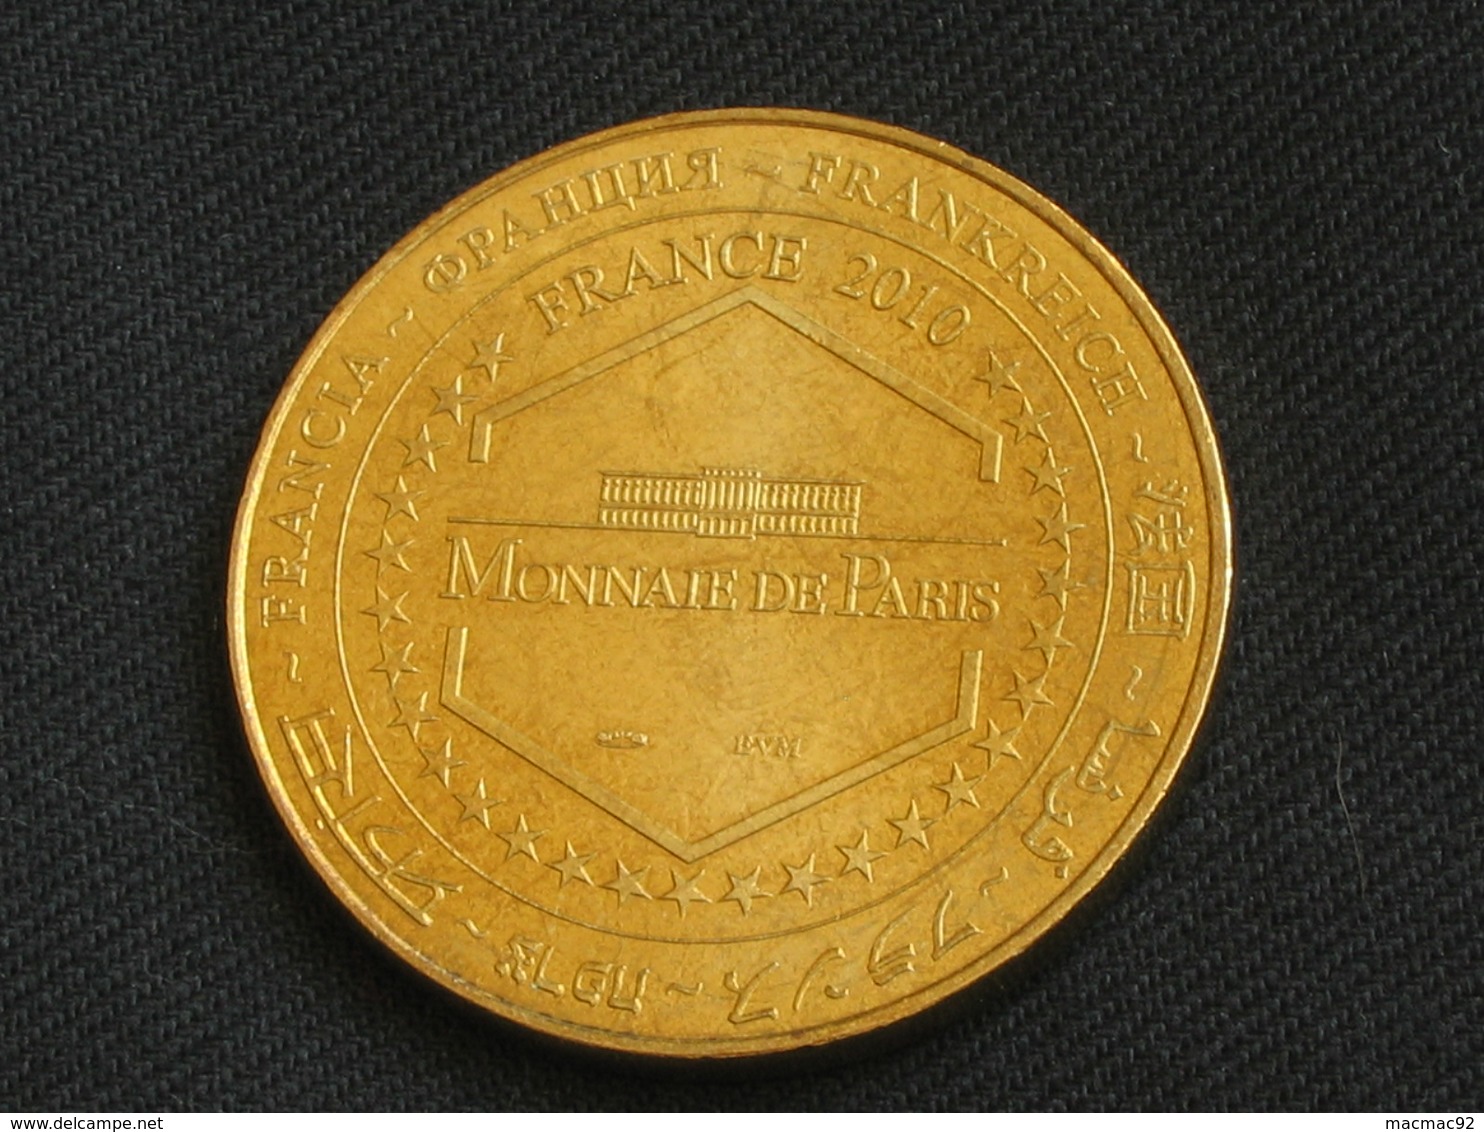 Monnaie De Paris  2007 - CONCORDE- 1er Vol Du Prototype 001 2 Mars 1969   **** EN ACHAT IMMEDIAT  **** - 2010